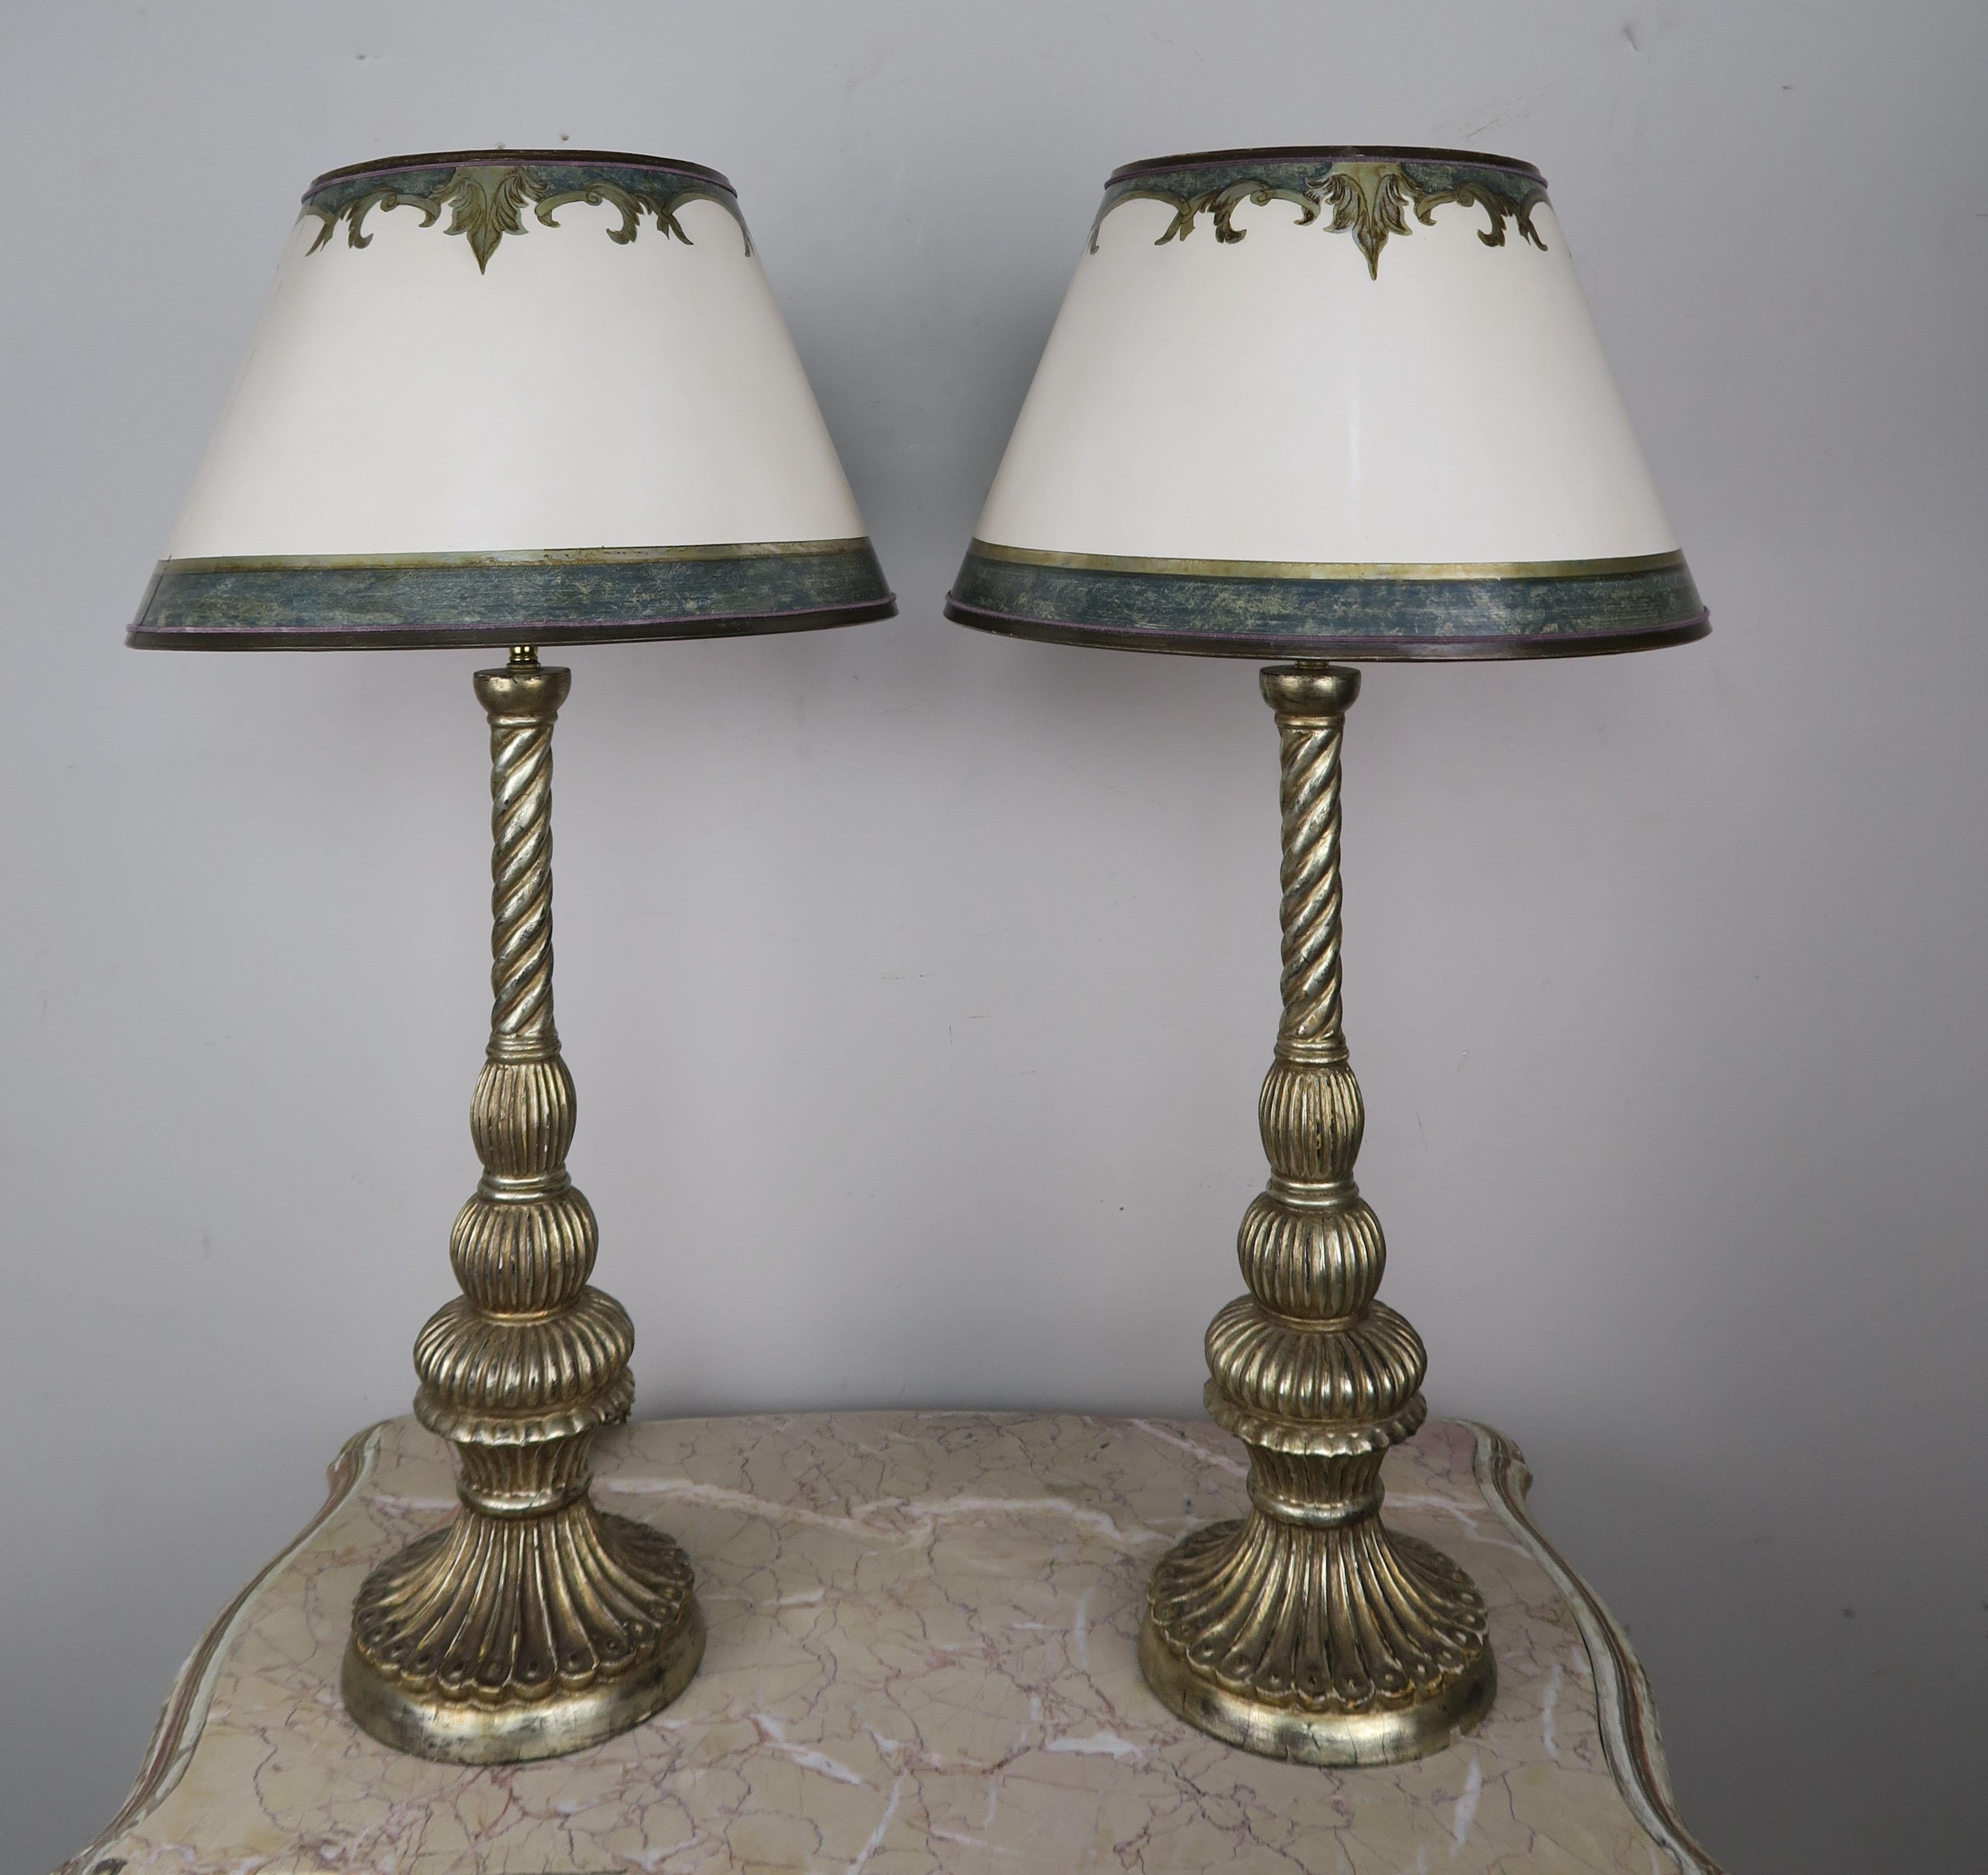 Zwei maßgeschneiderte Lampen mit Sockeln aus geschnitztem, antikem Borghese-Holz, gekrönt von handbemalten Pergamentschirmen. Die Lampen sind mit doppelt verstellbaren Harfen verdrahtet und beide sind in einem funktionierenden Zustand.